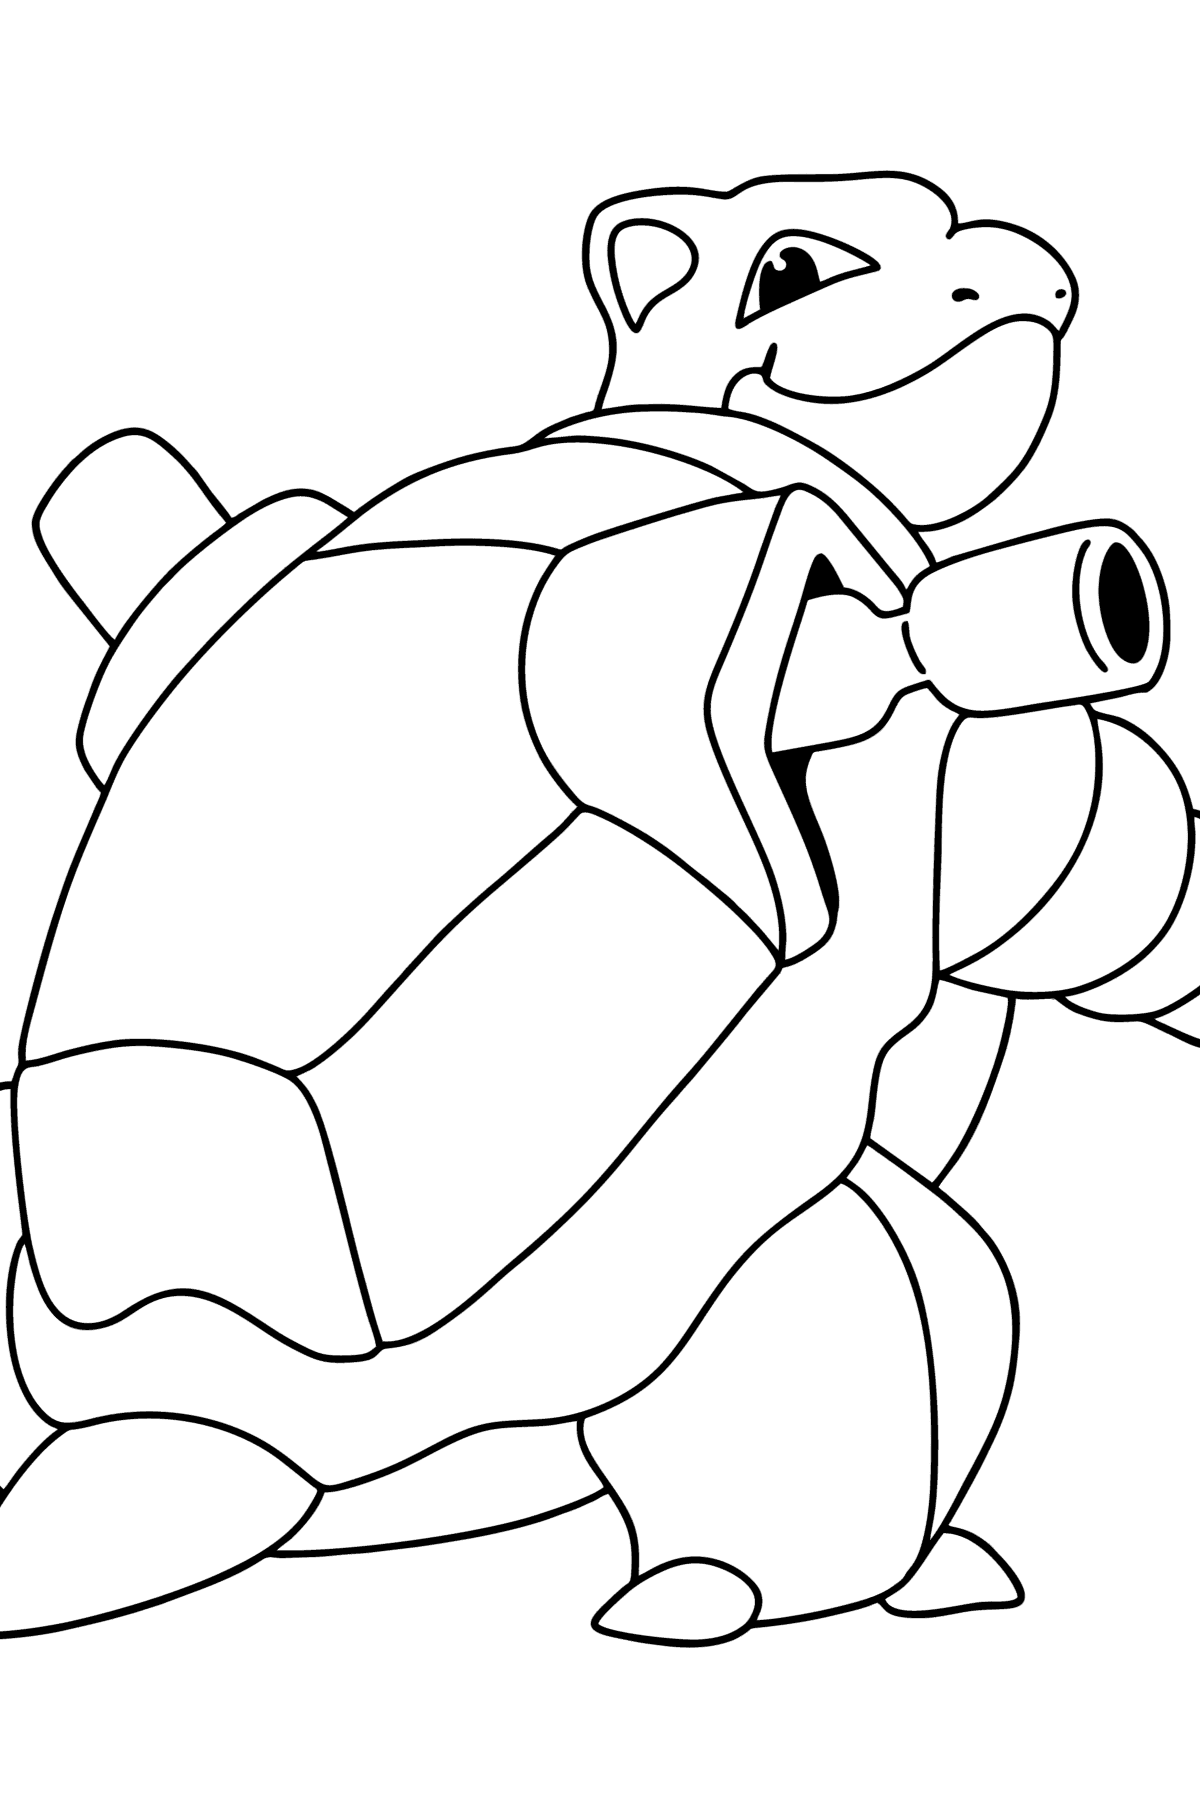 Desenho de Pokémon Go Blastoise para colorir - Imagens para Colorir para Crianças